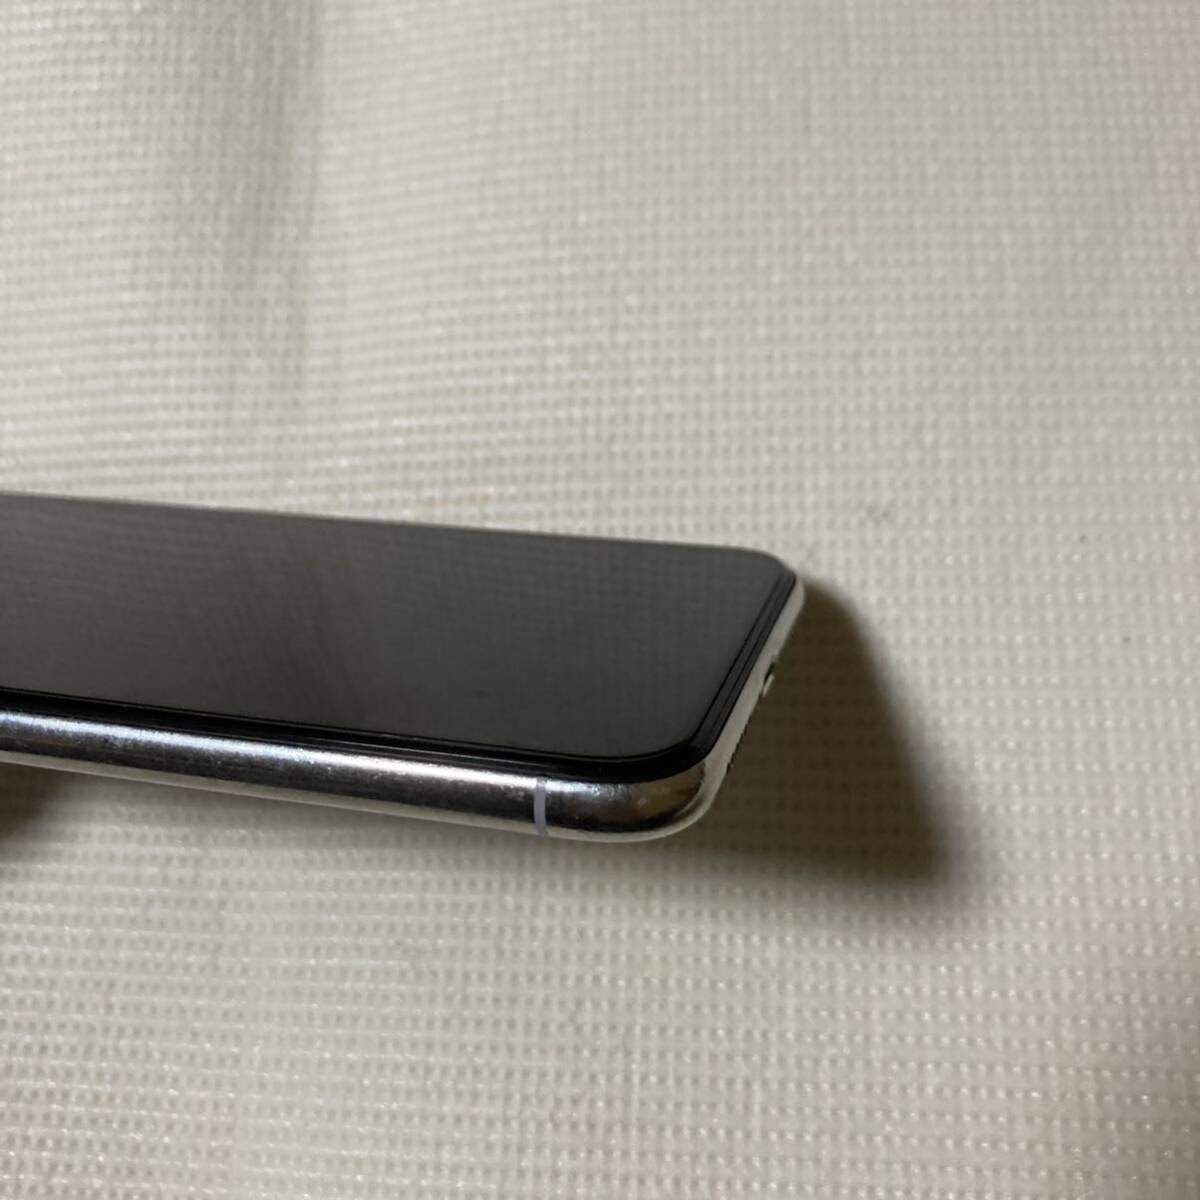 送料無料 SIMフリー iPhoneX 256GB シルバー バッテリー最大容量100% SIMロック解除済 中古品